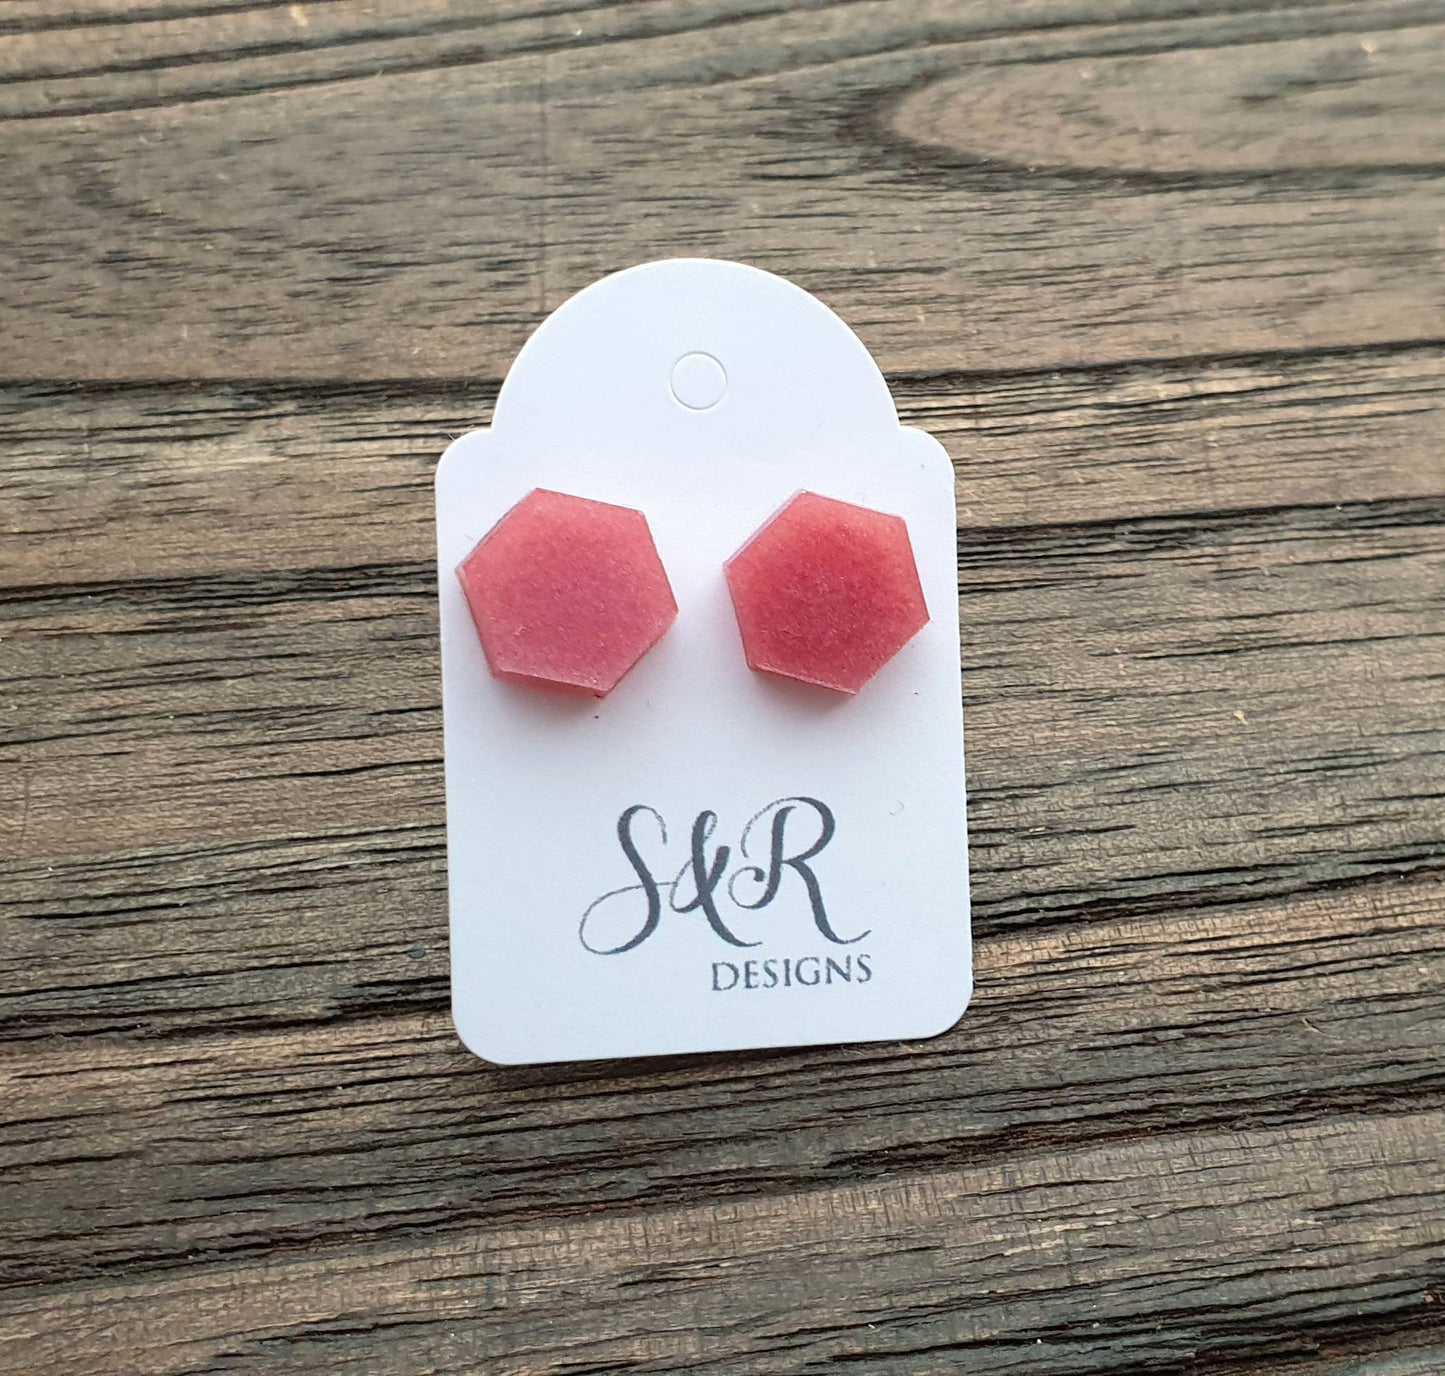 Hexagon Resin Stud Earrings, Pink Blush Earrings. Stainless Steel Stud Earrings. 10mm or 6mm